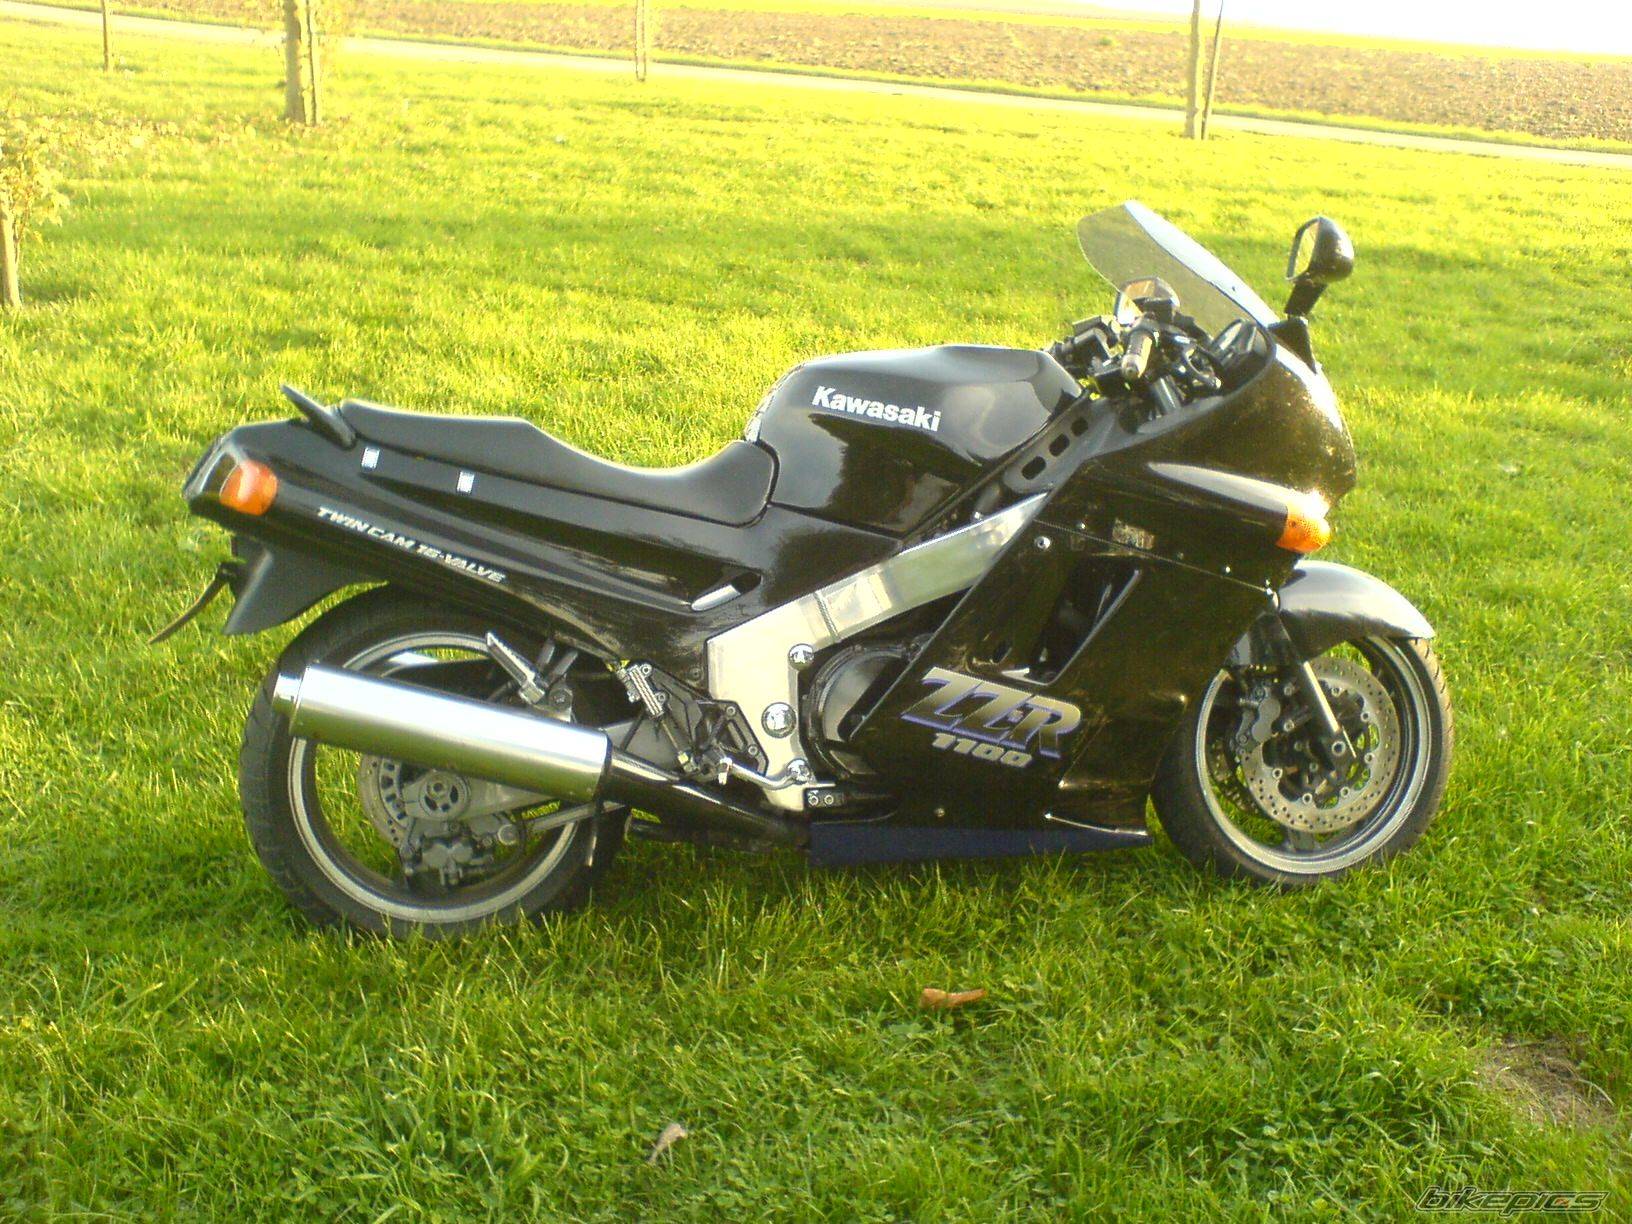 Тест-драйв мотоцикла kawasaki zz-r1100 от моторевю.